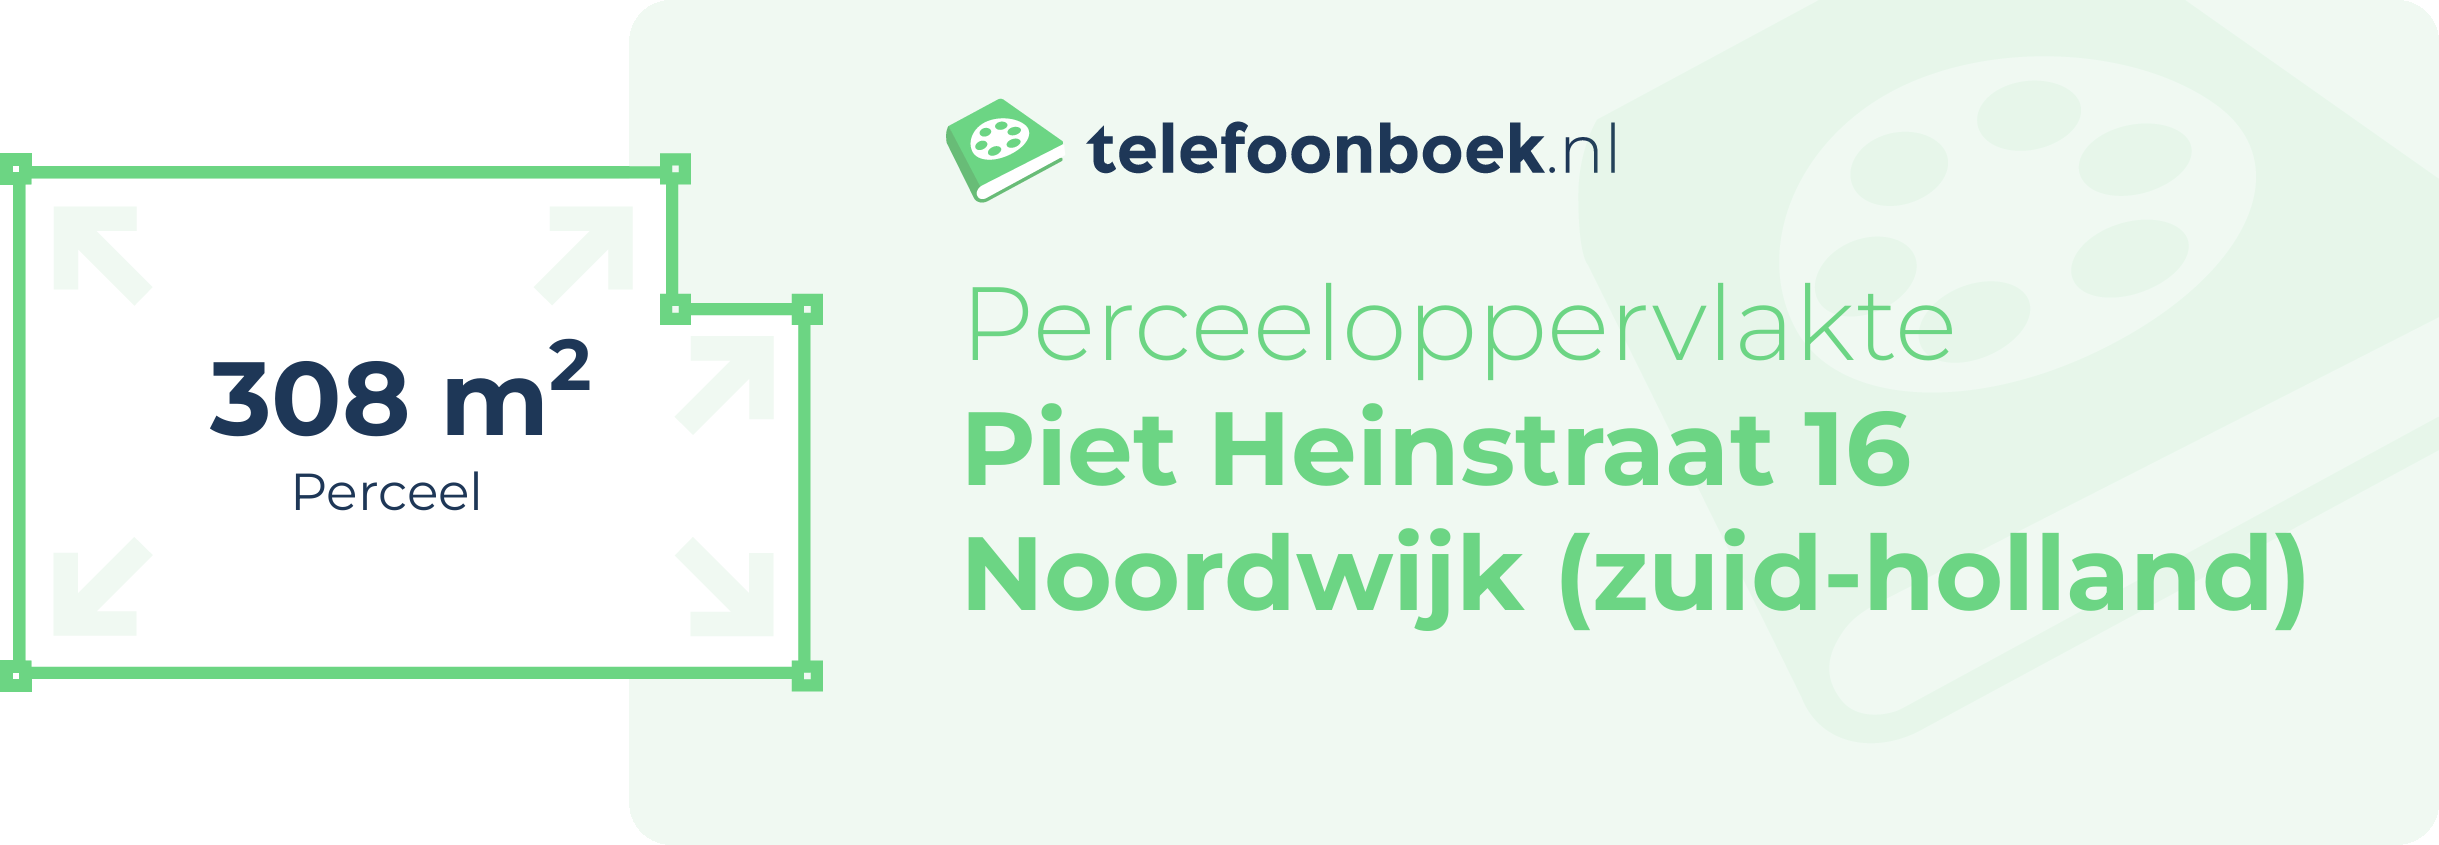 Perceeloppervlakte Piet Heinstraat 16 Noordwijk (Zuid-Holland)